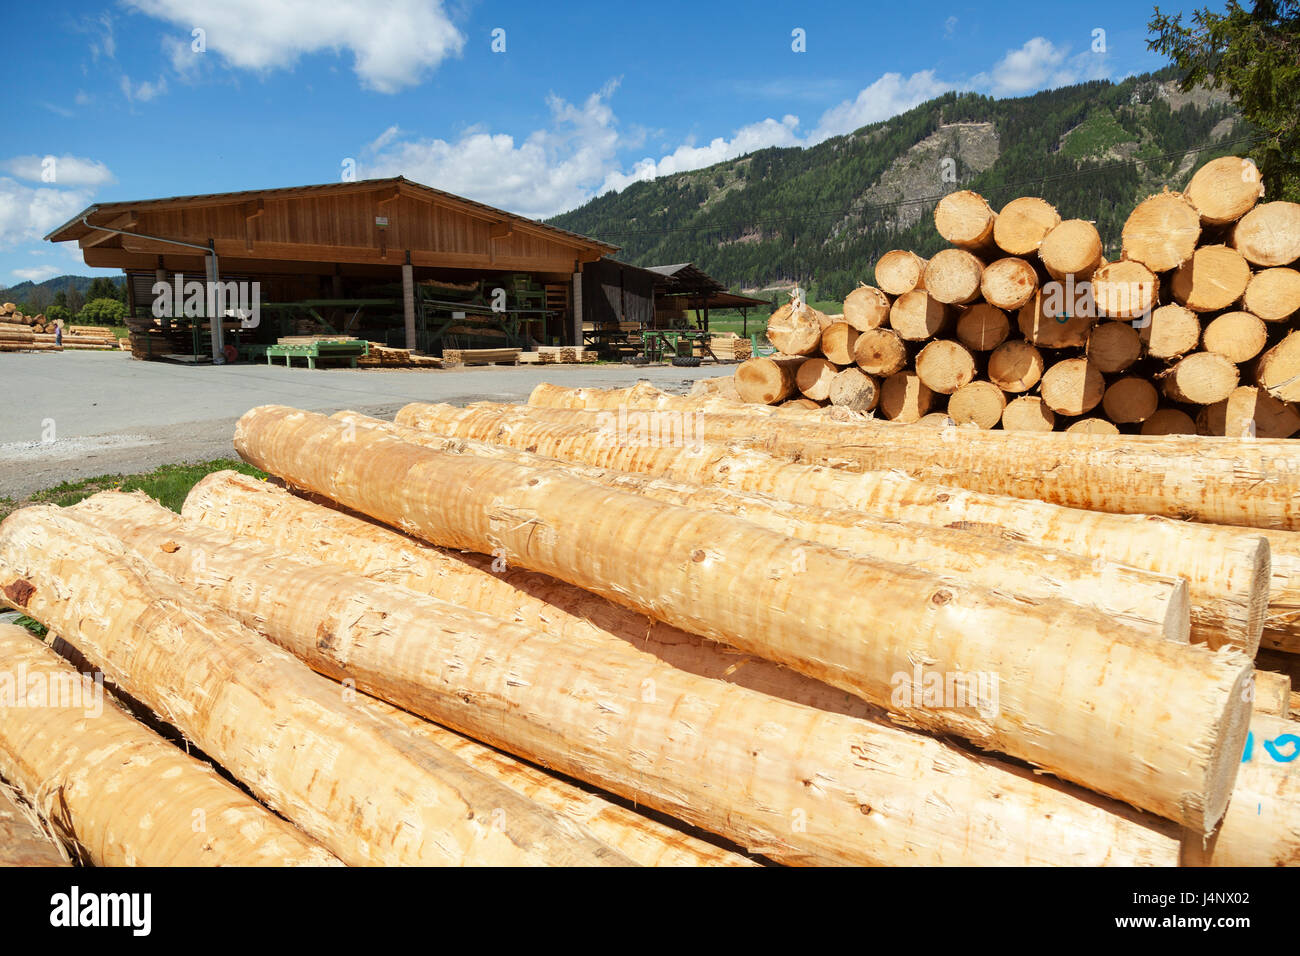 Sawmill in Alps, Austria Stock Photo